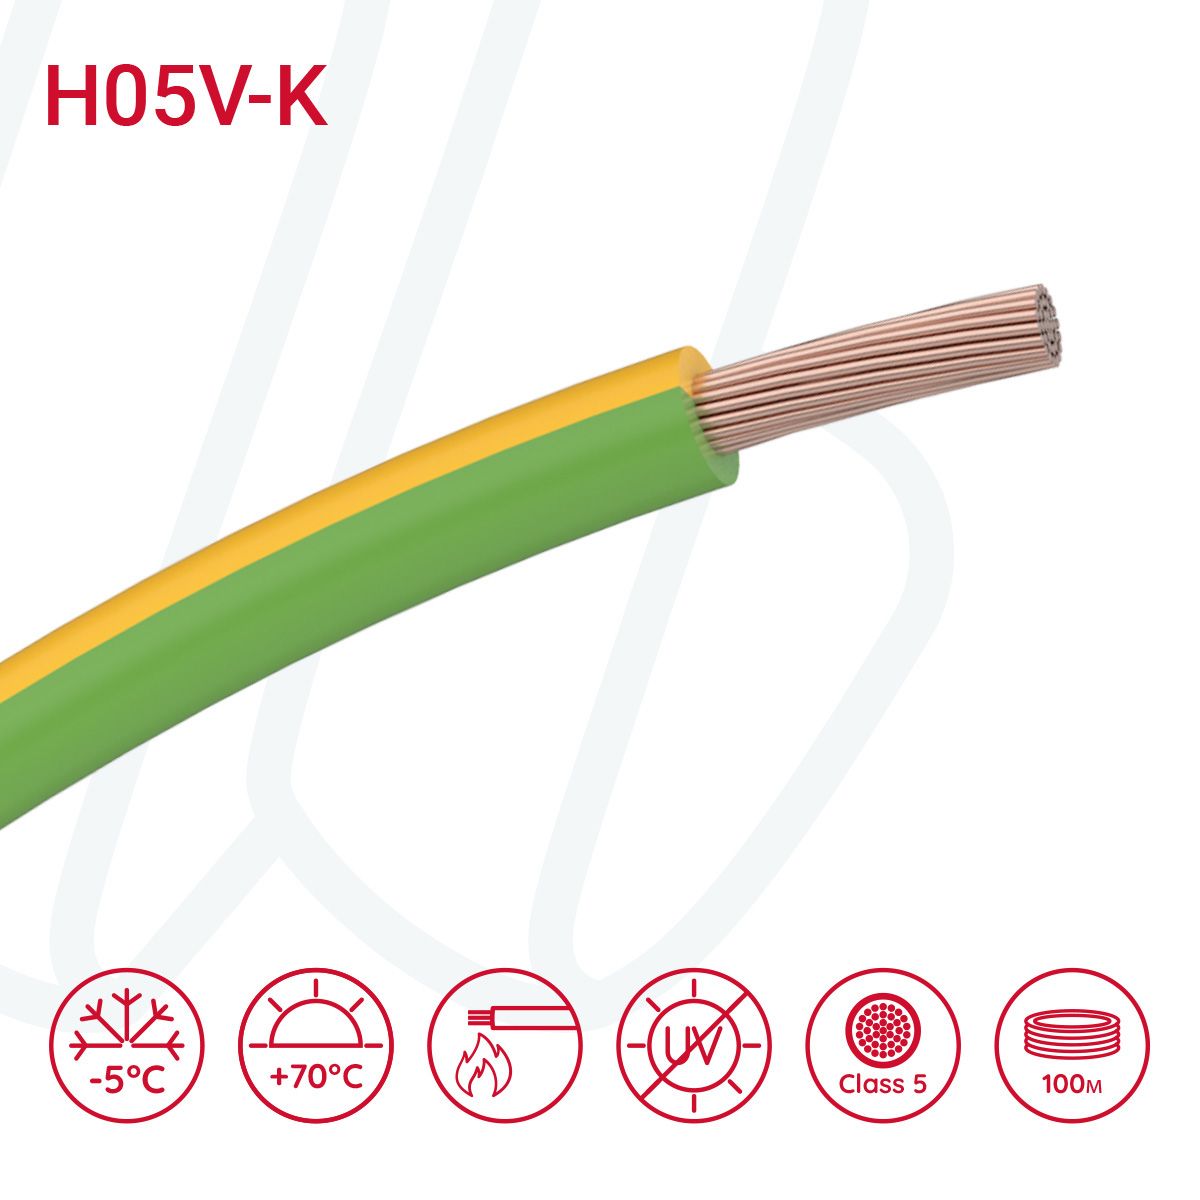 Провід монтажний гнучкий H05V-K 0.75 мм² жовто-зелений, 01, 0.75